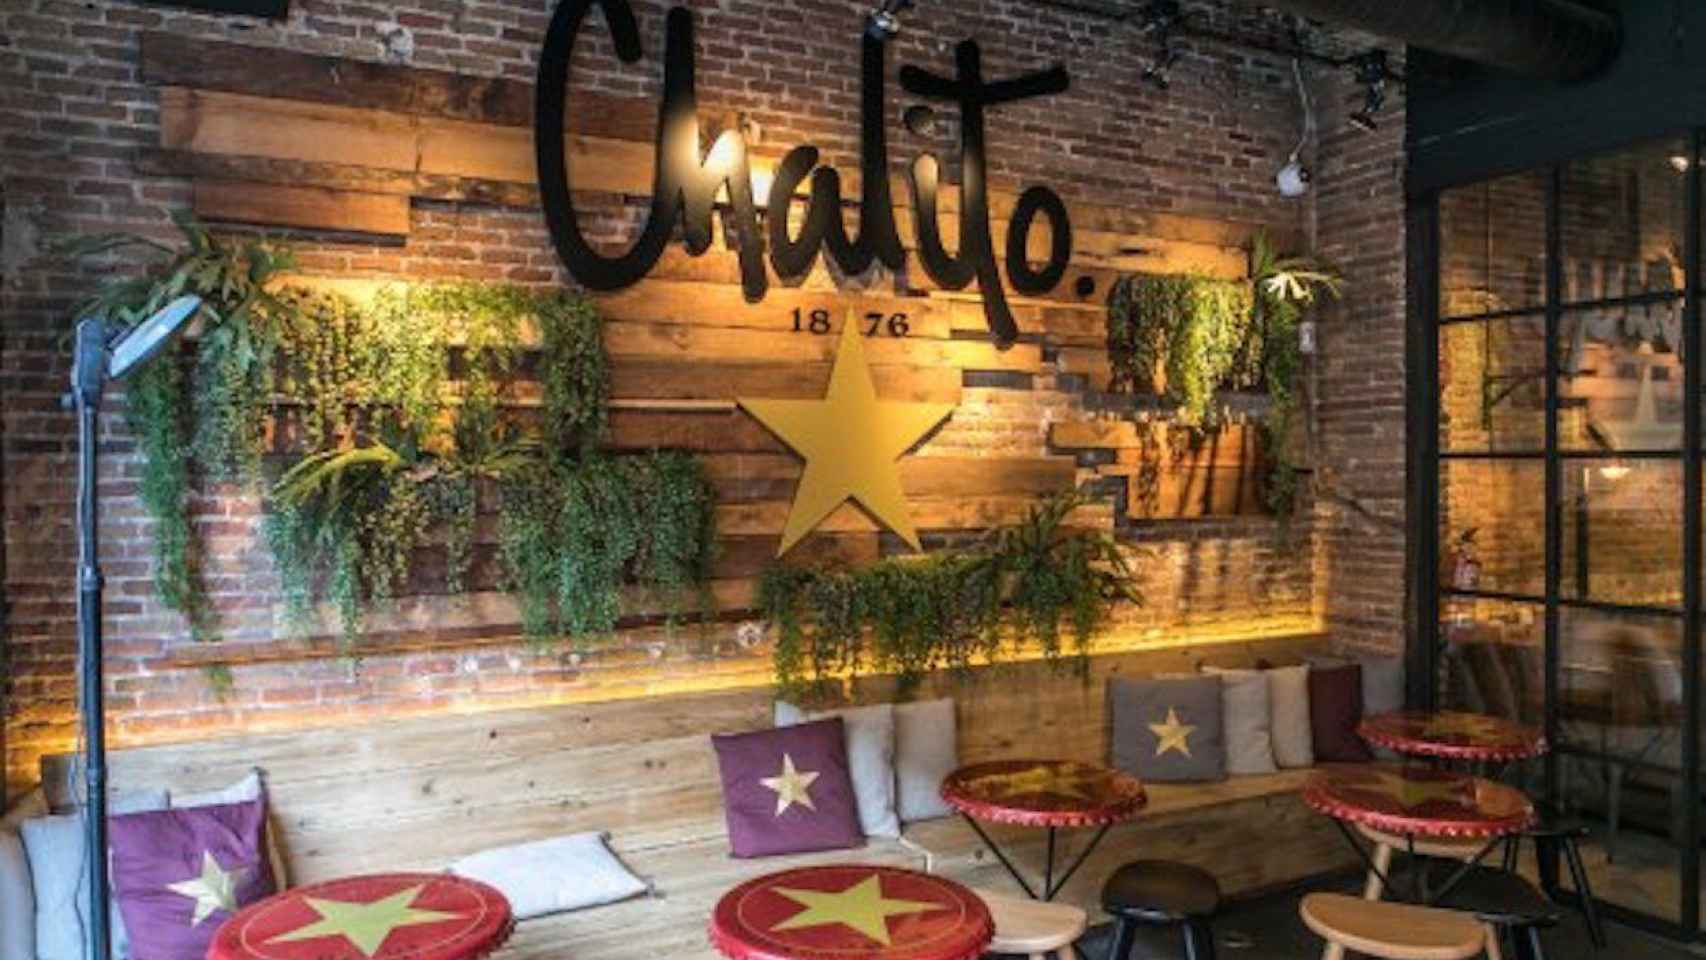 El restaurante 'Chalito', ubicado en Rambla Catalunya, es propiedad del futbolista Luis Suárez / TRIPADVISOR